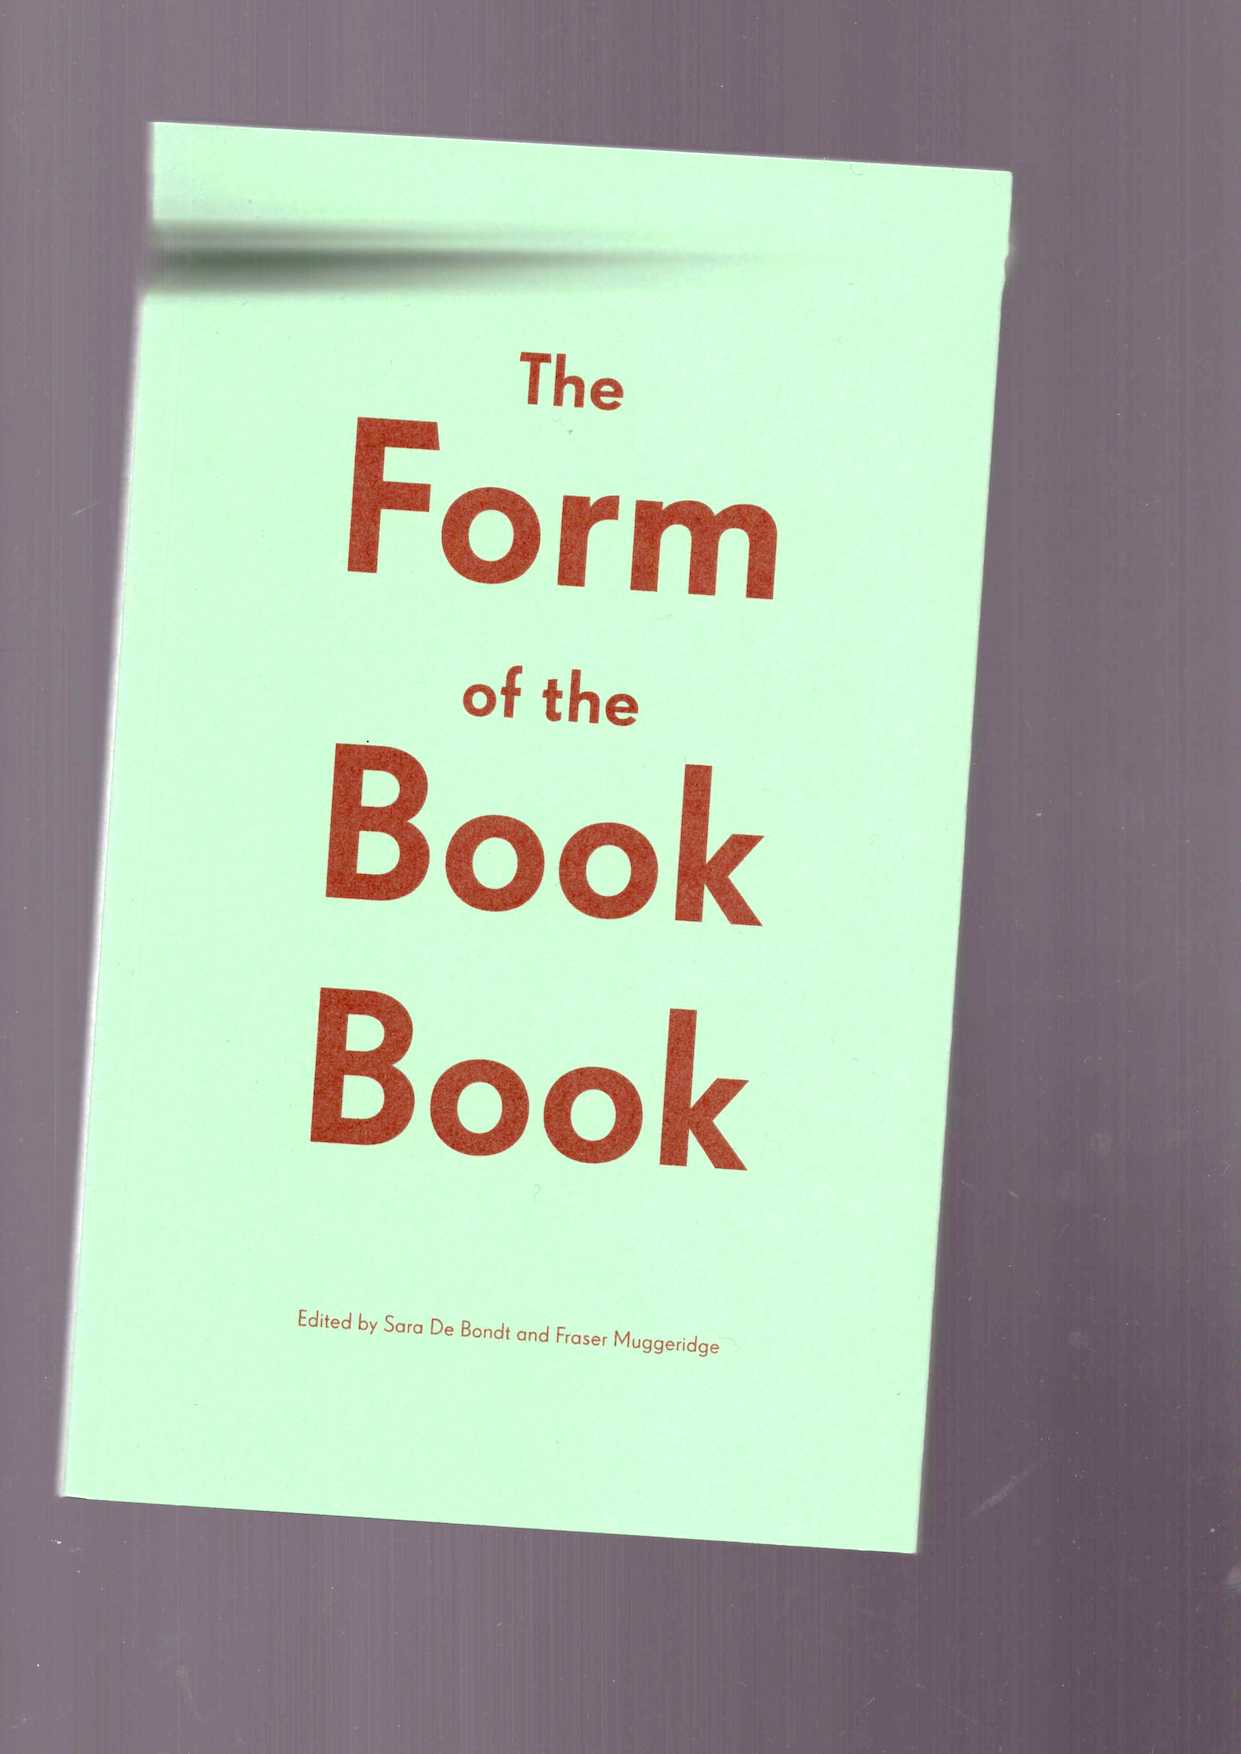 DE BONDT, Sarah; MUGGERIDGE, Fraser (eds.) - The Form of the Book Book